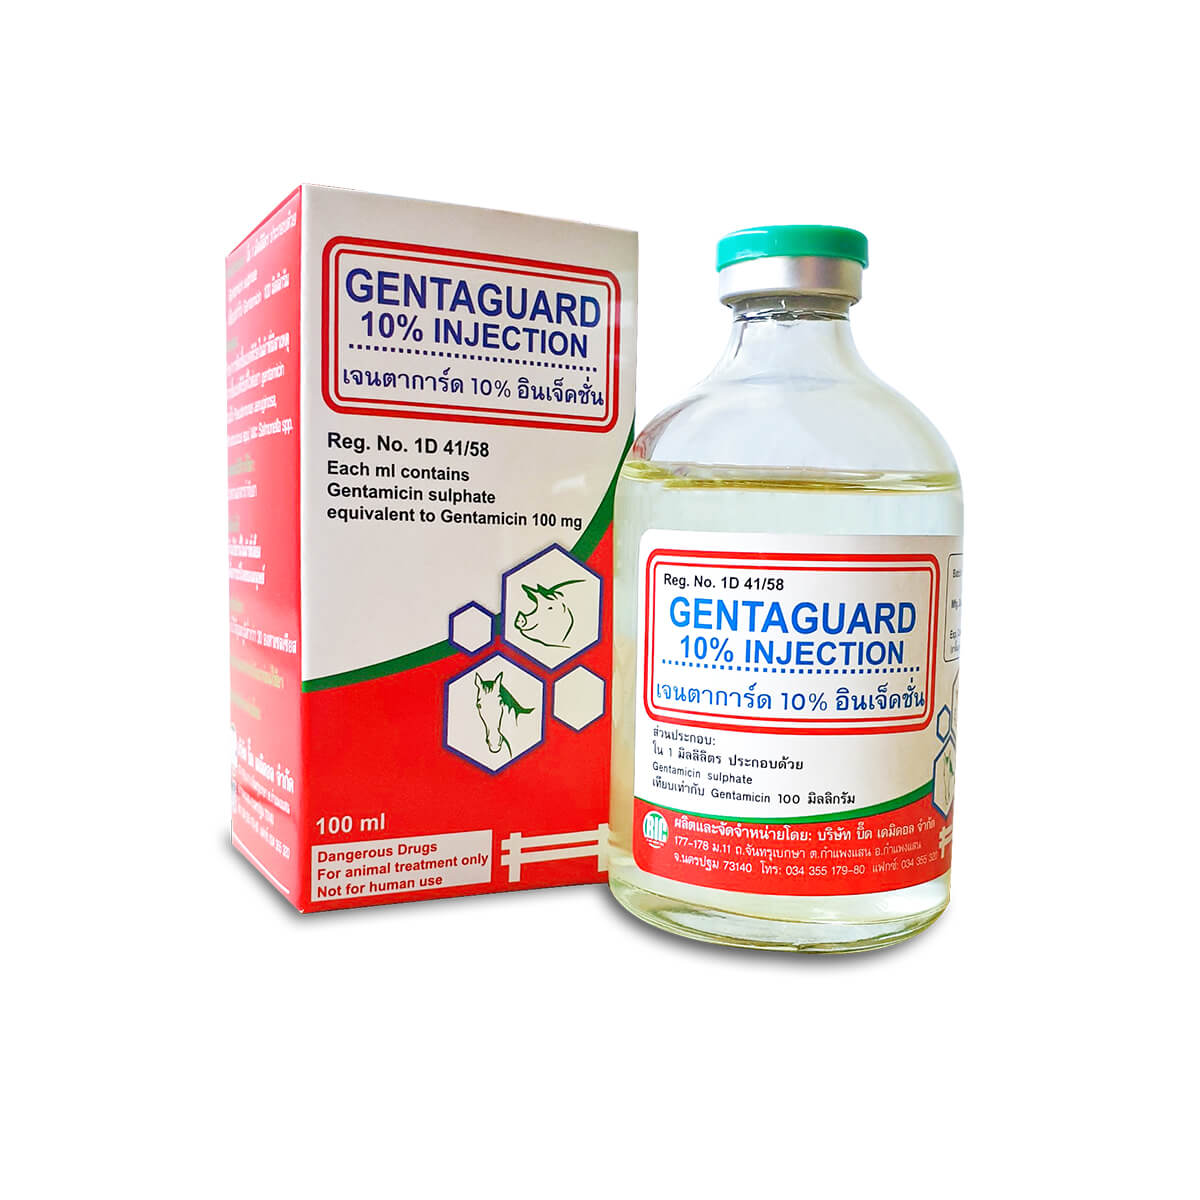 kháng sinh gentaguard 10 injection đặc trị bệnh cho gia súc